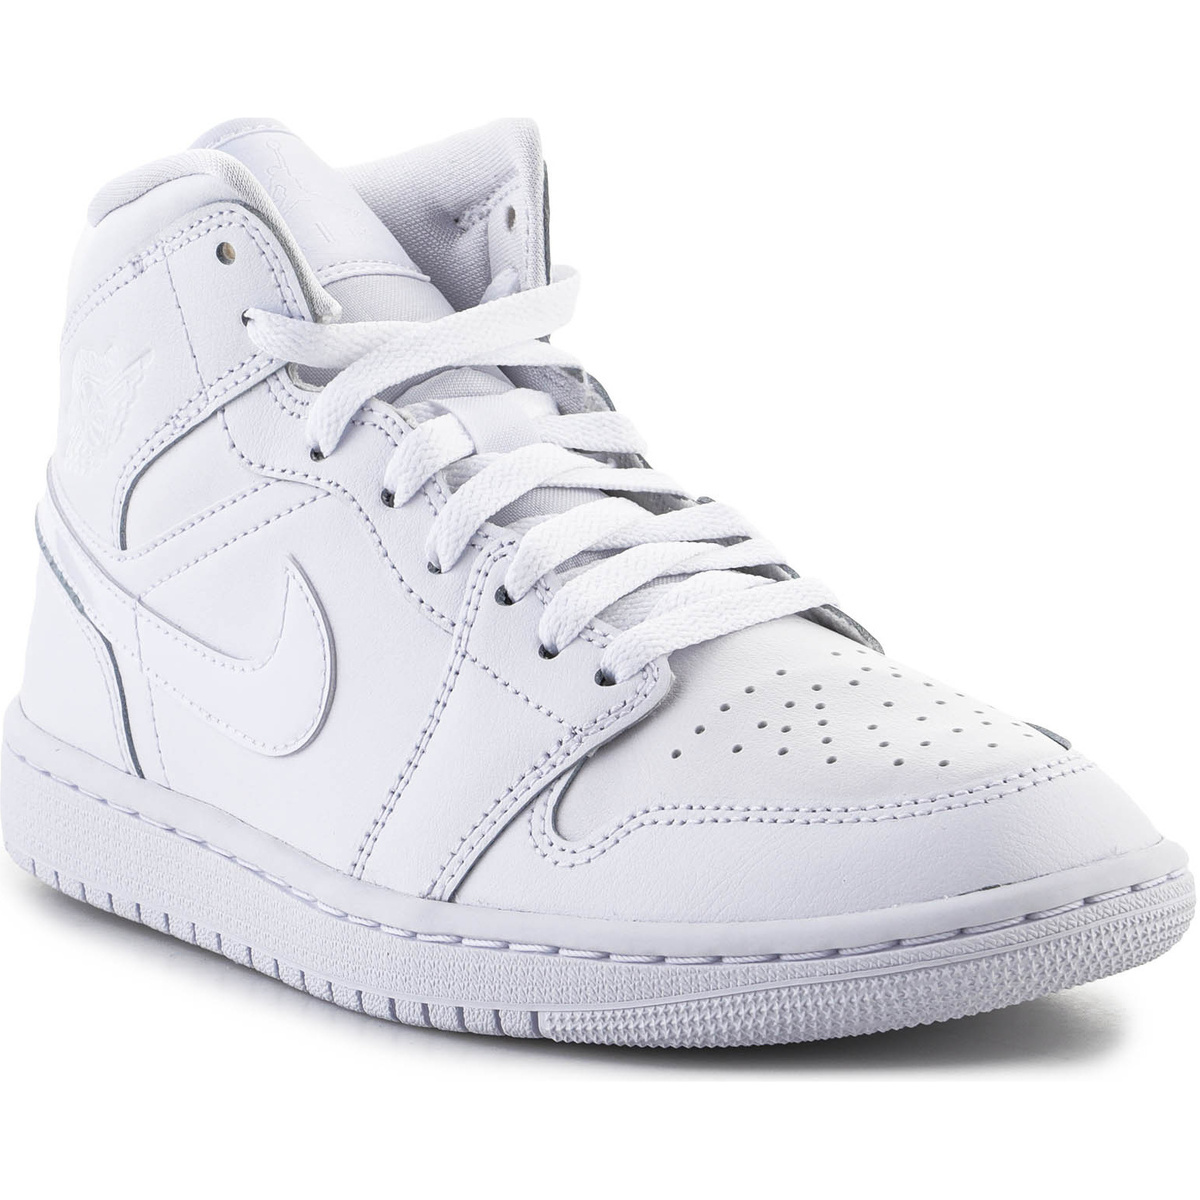 Παπούτσια του Μπάσκετ Nike Air Jordan 1 Mid DV0991-111